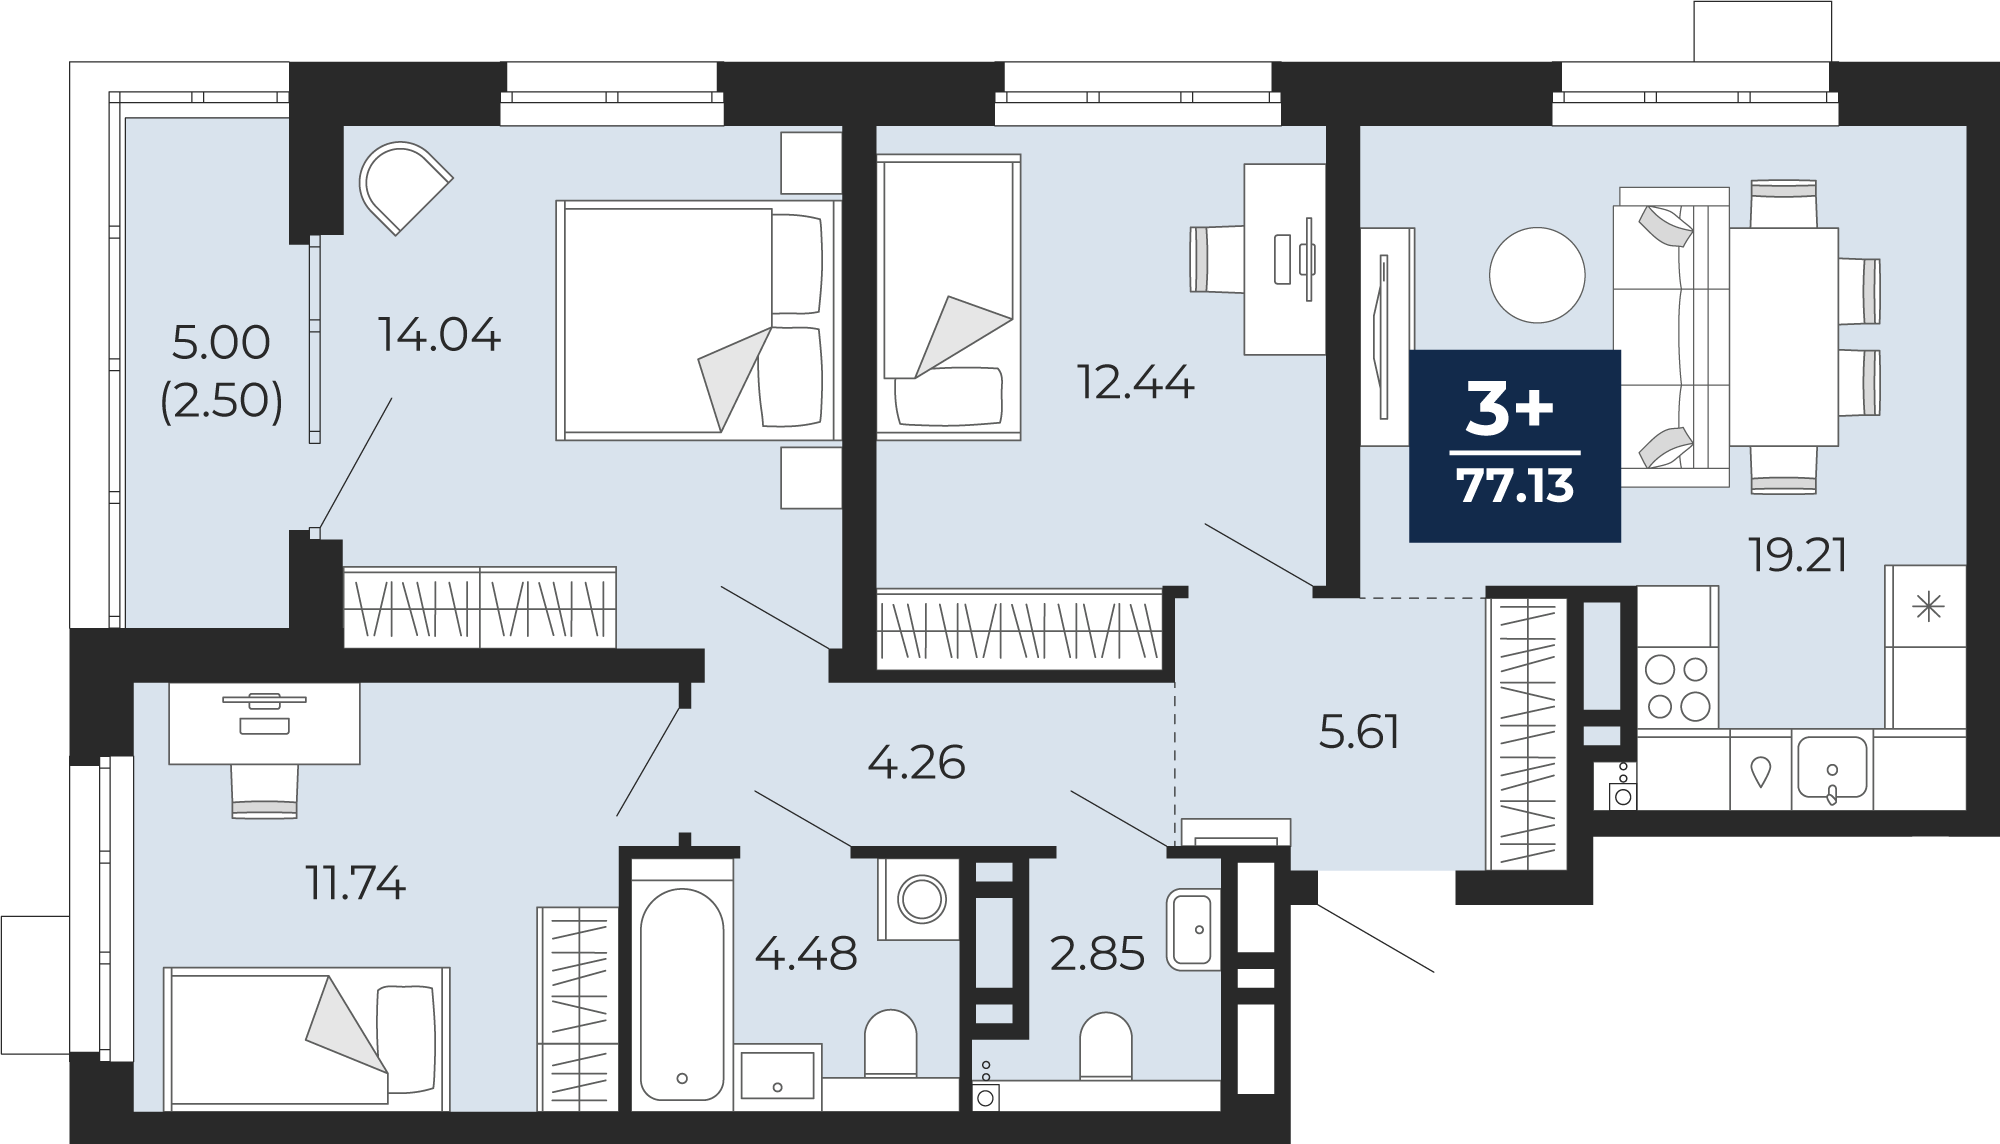 Квартира № 38, 3-комнатная, 77.13 кв. м, 6 этаж